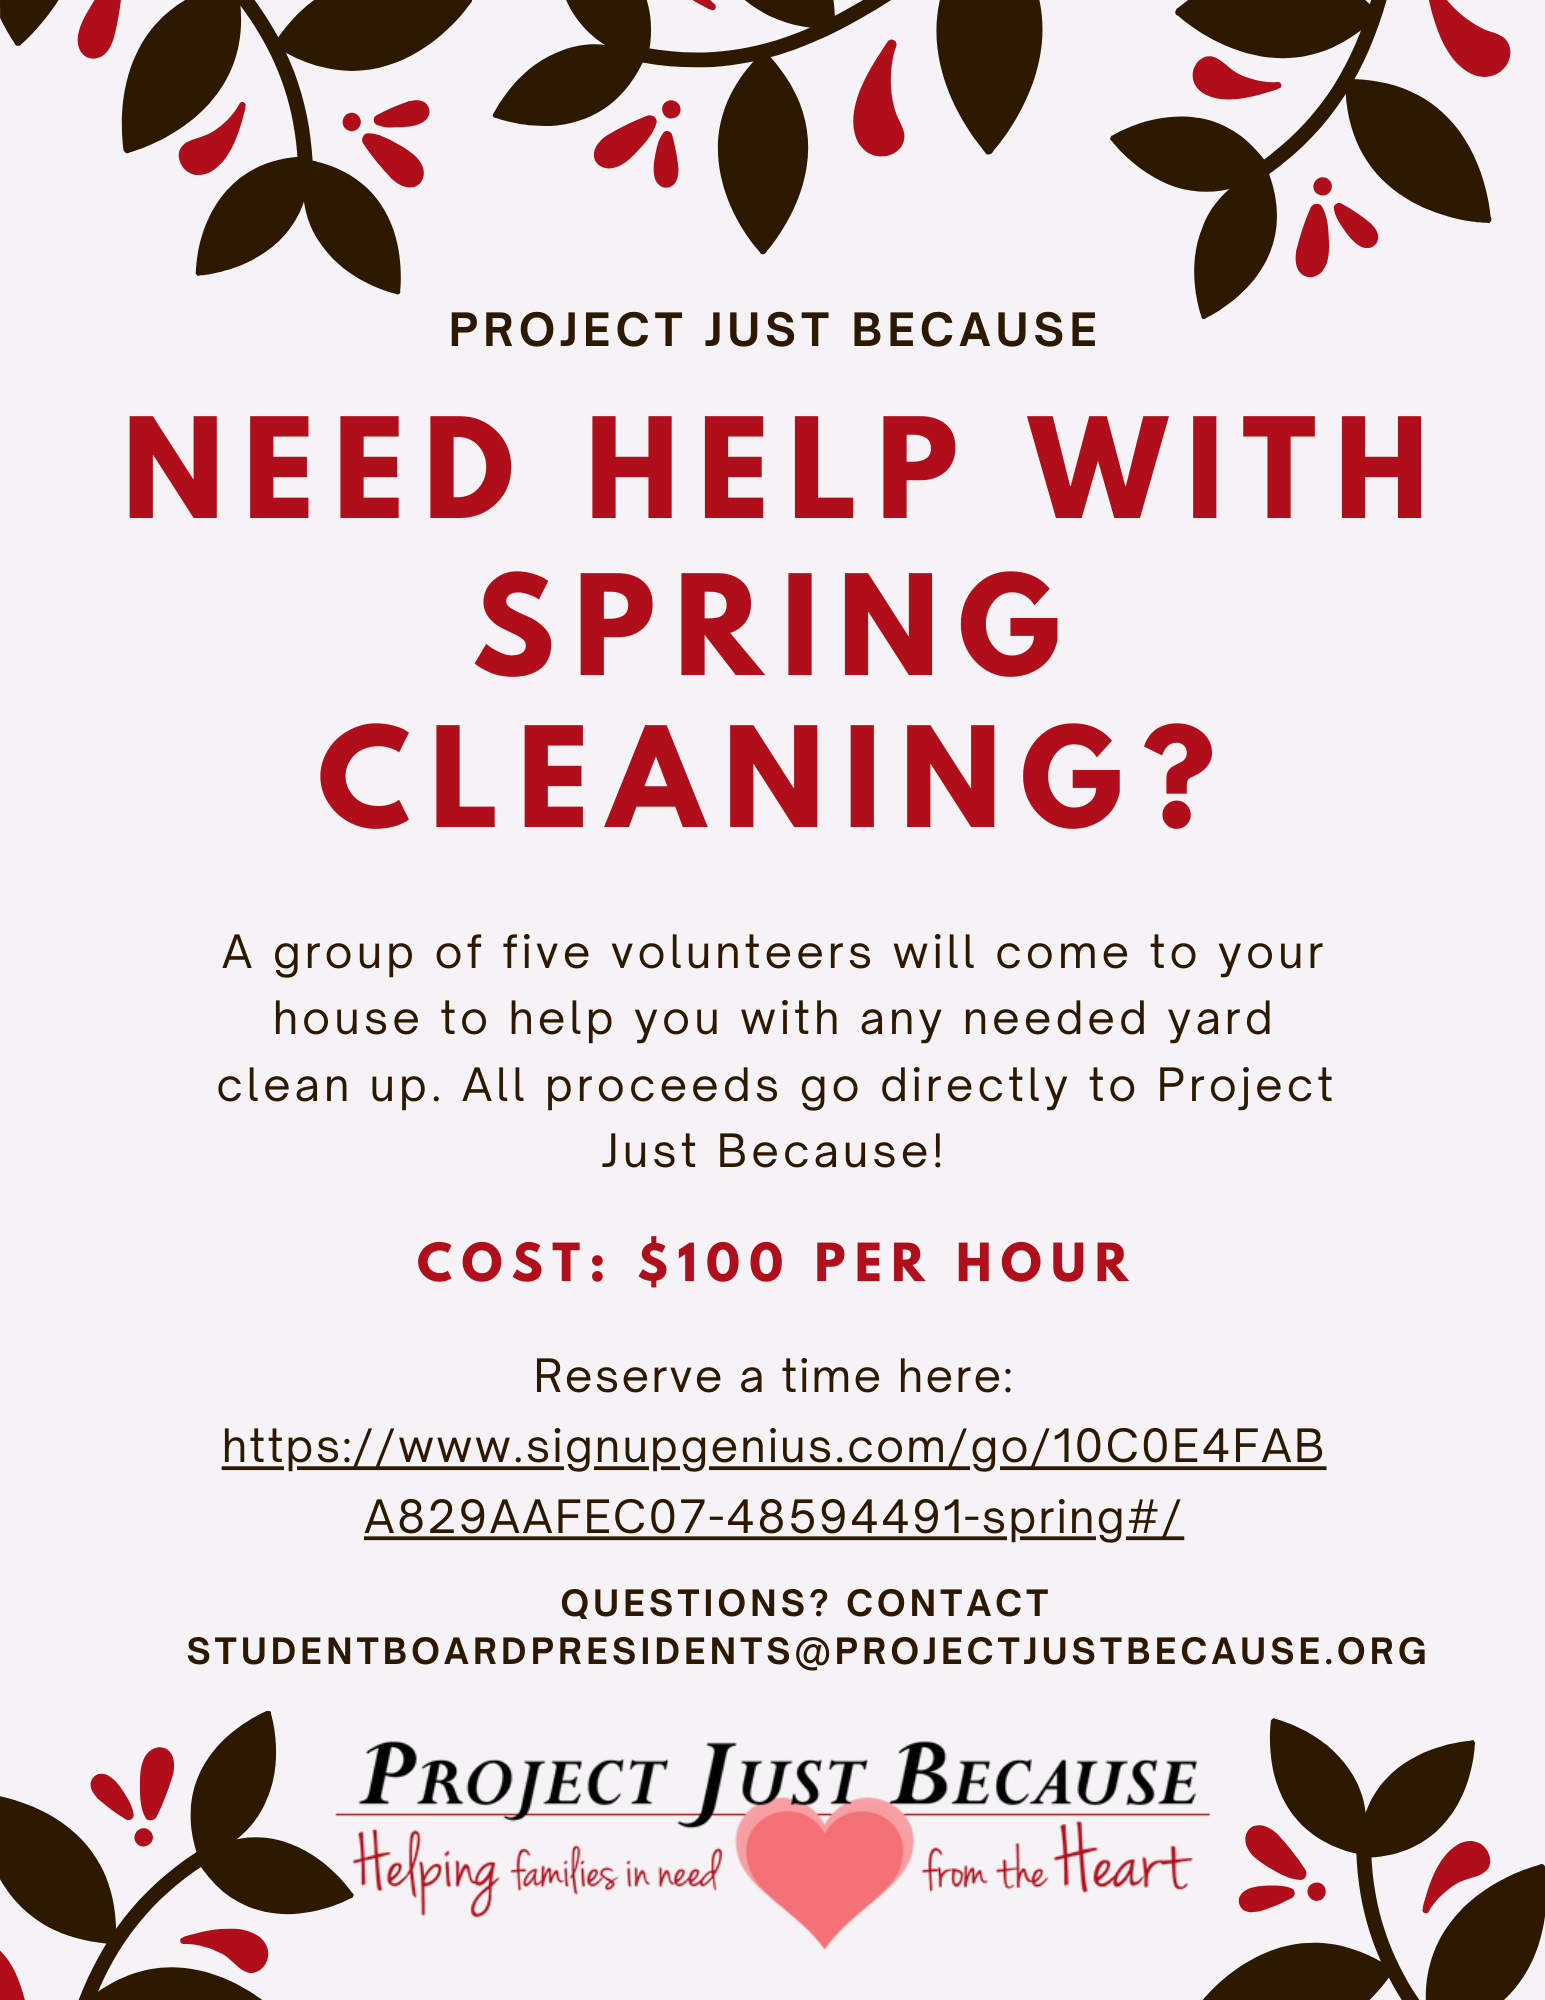 Spring Cleaning Fundraiser for PJB April 7-June 16